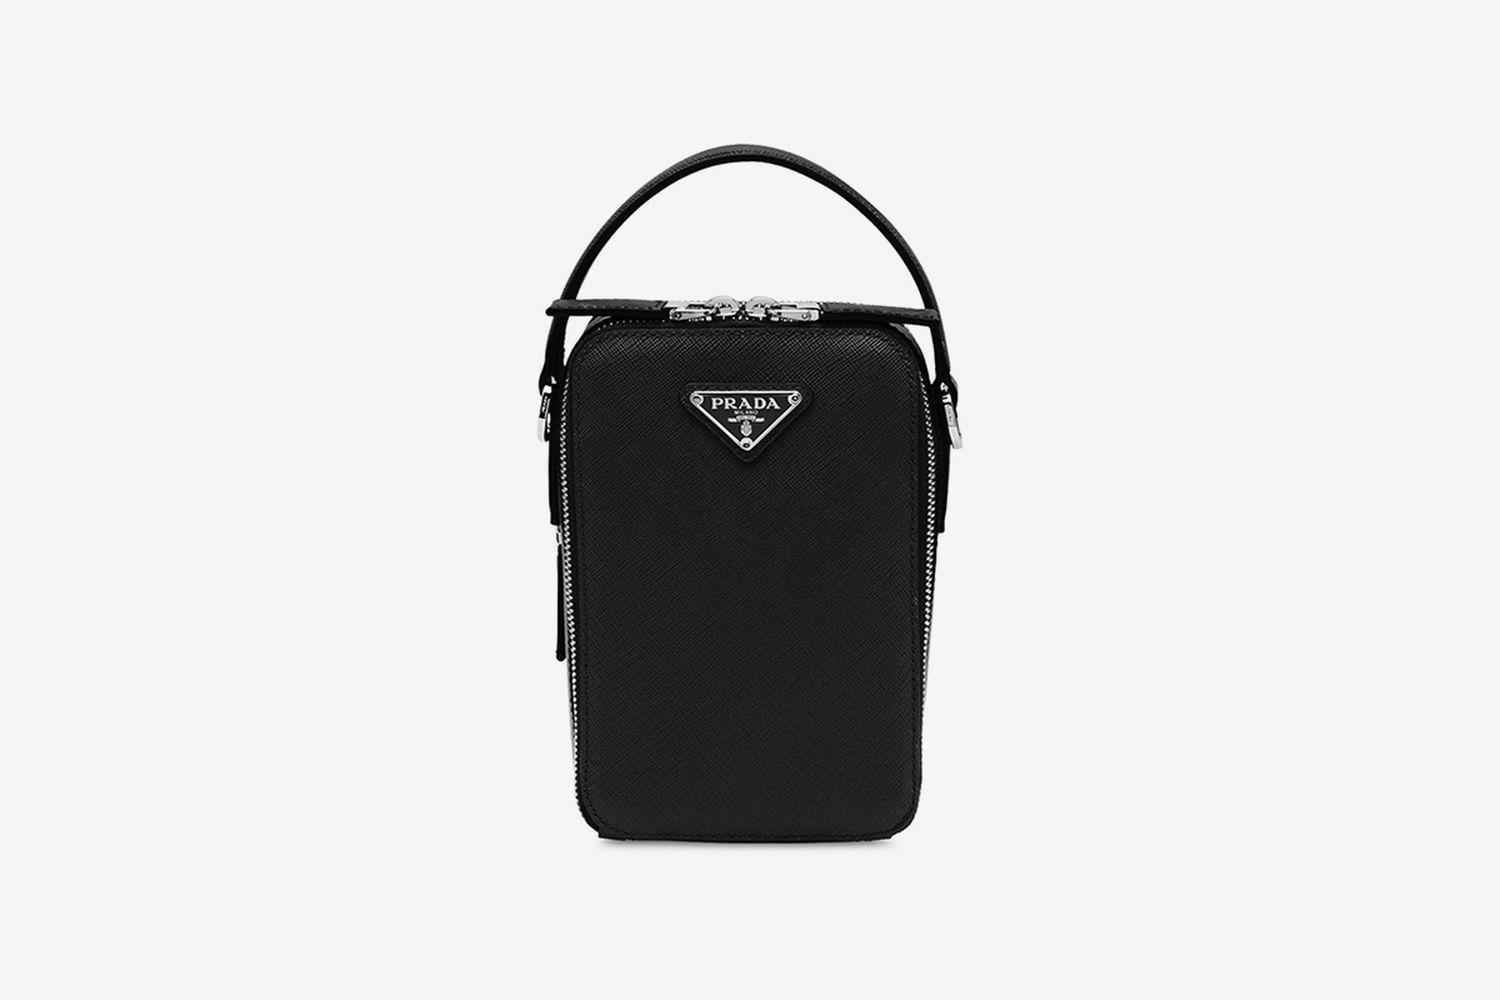 Saffiano Leather Shoulder Bag